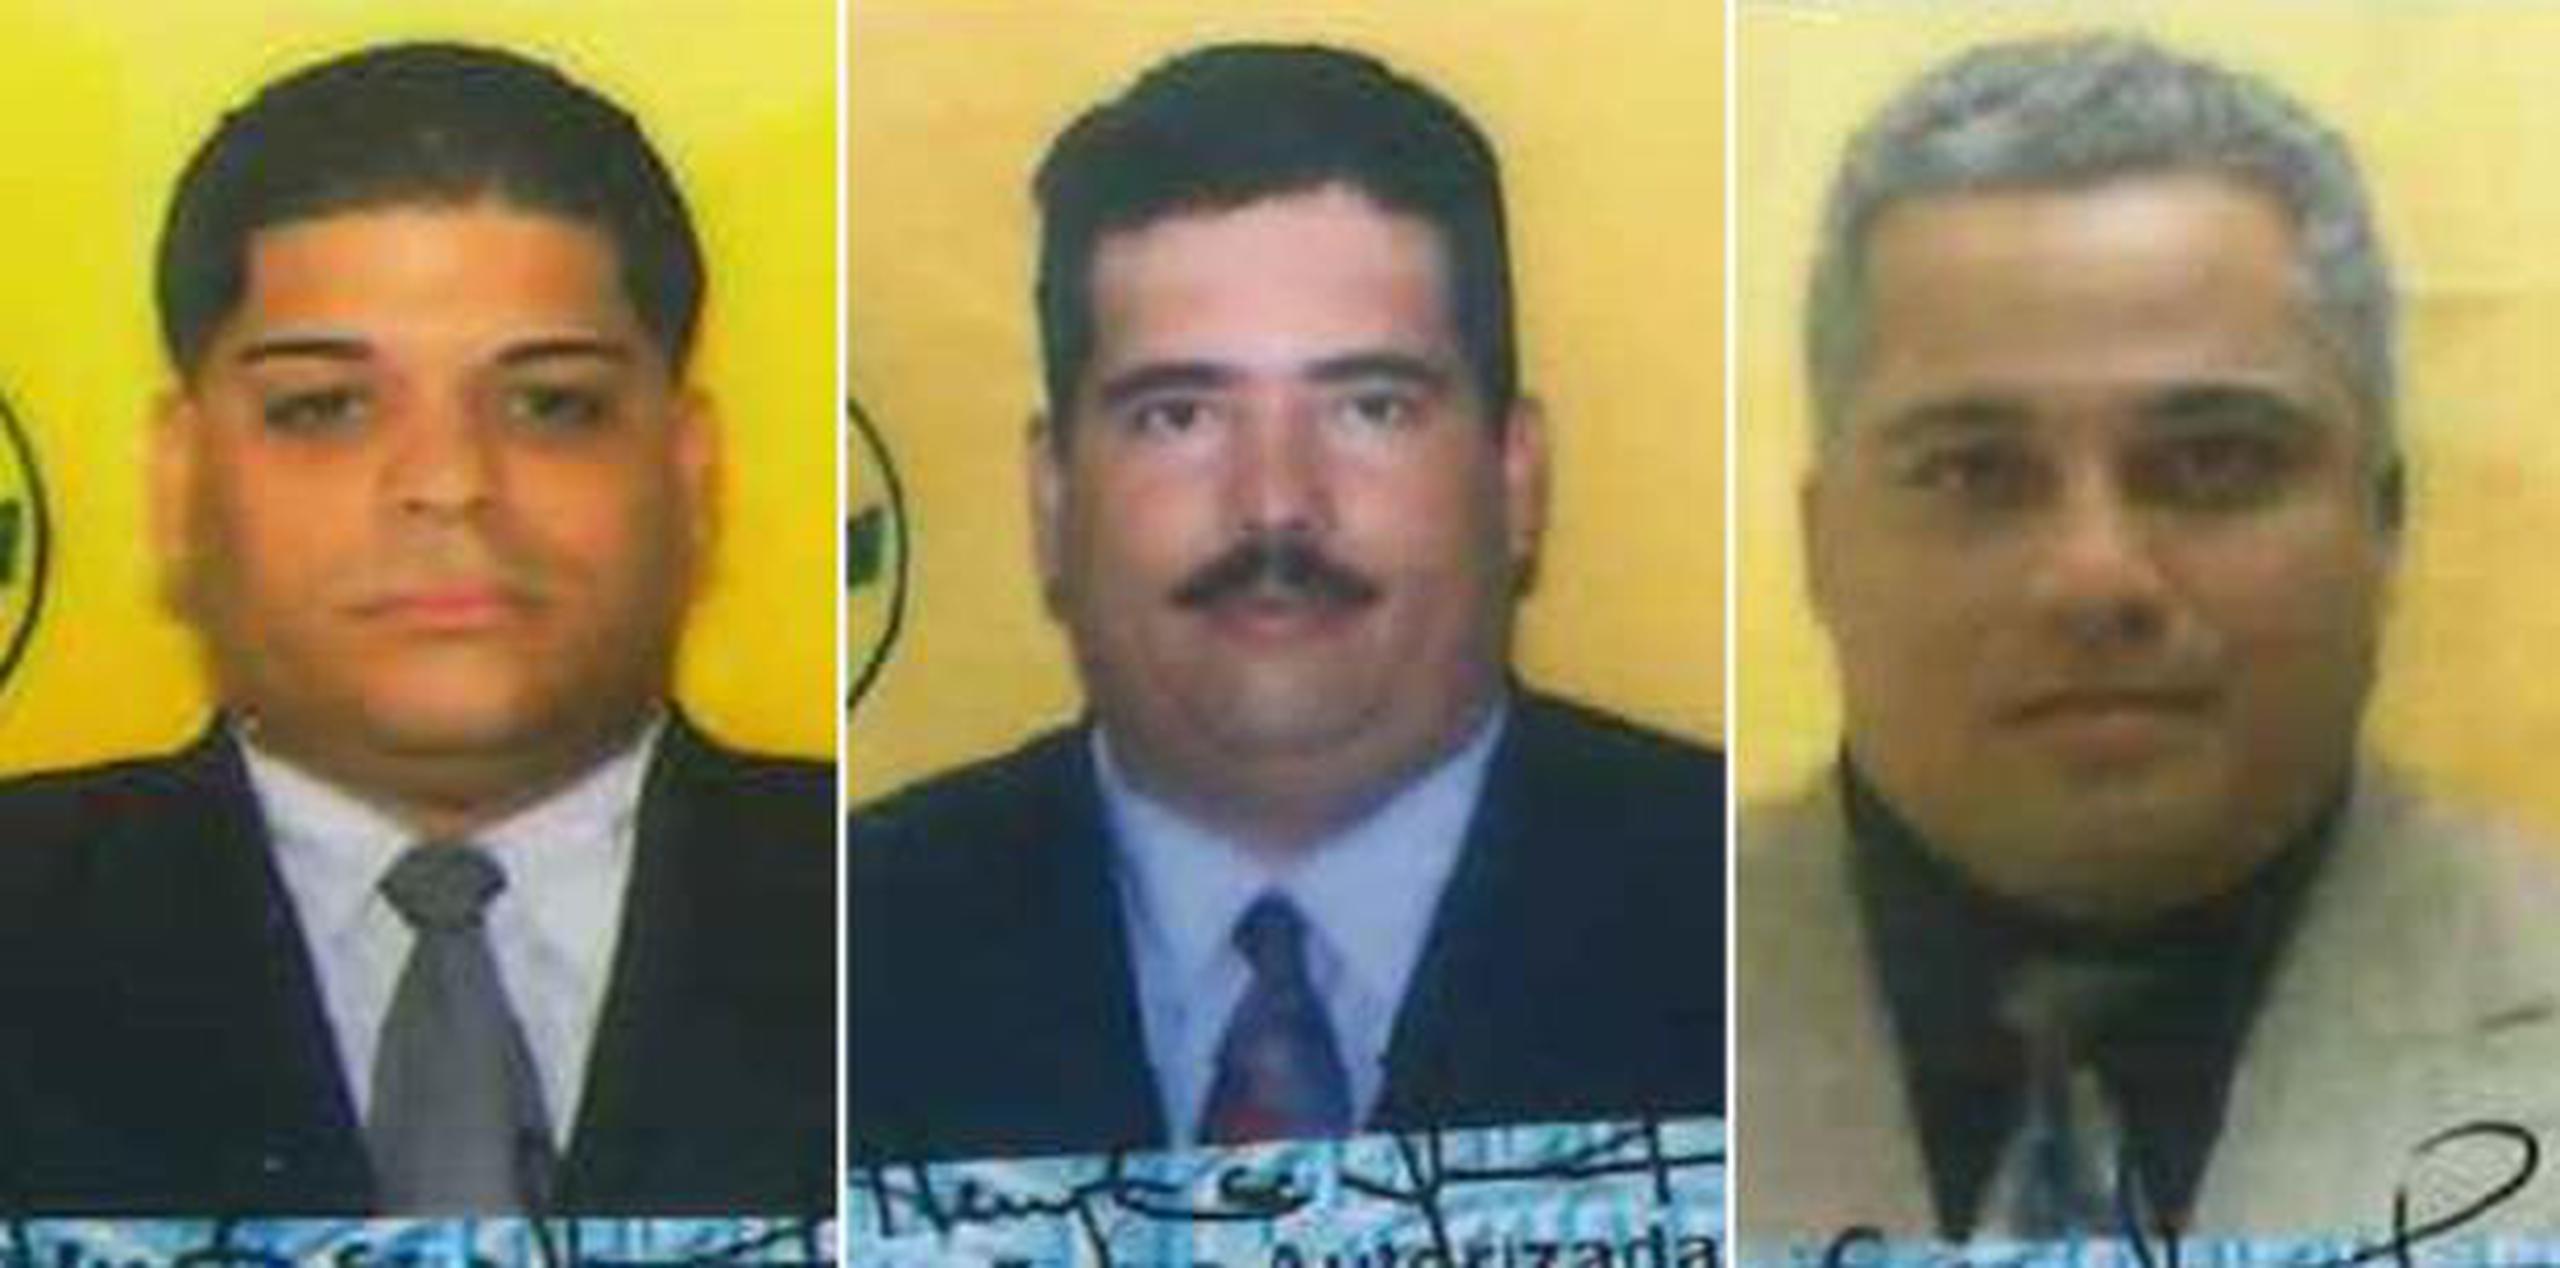 La Policía los identificó como Ramón Cotto Centeno, Jorge Muñoz Martínez y Luis Rivera Ruiz. (Suministrada)